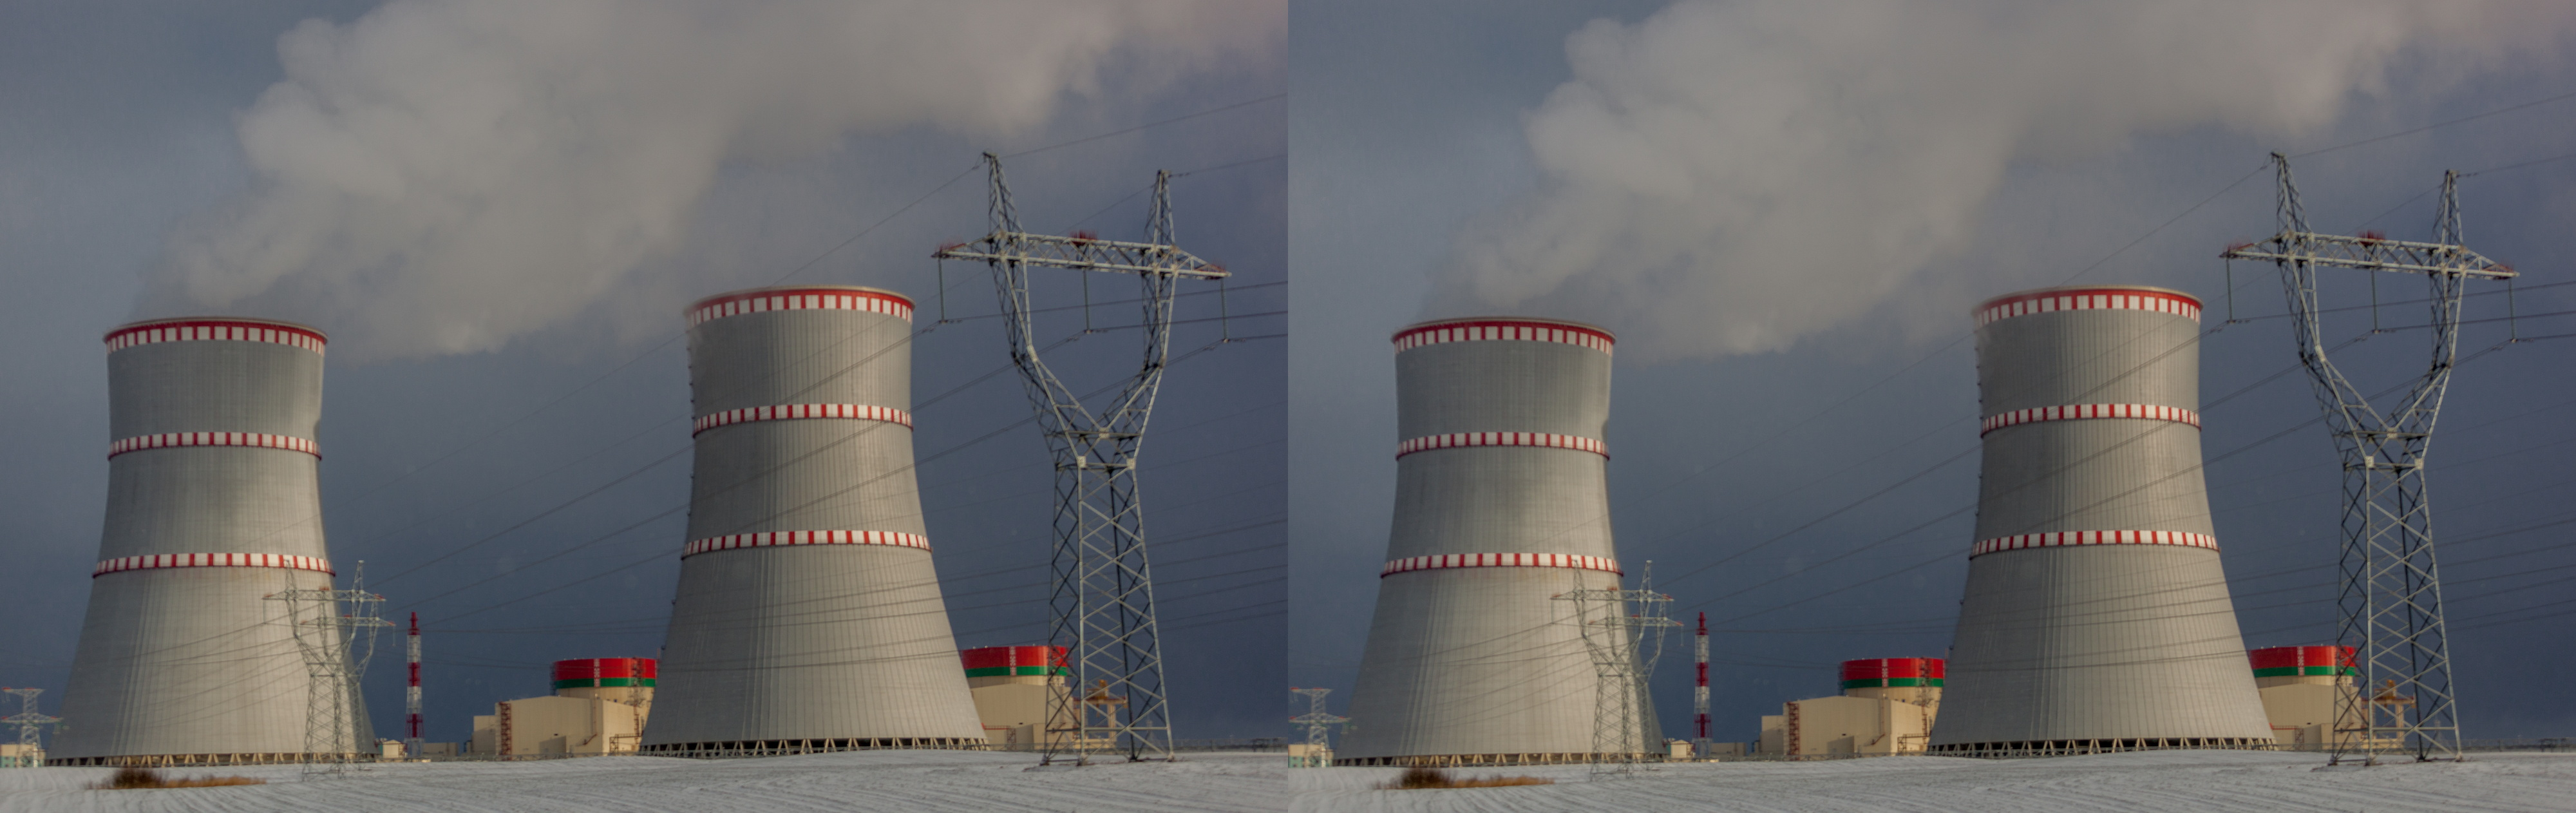 Гендиректор "Росатома" Алексей Лихачёв напомнил о намерениях строительства второй АЭС в Беларуси